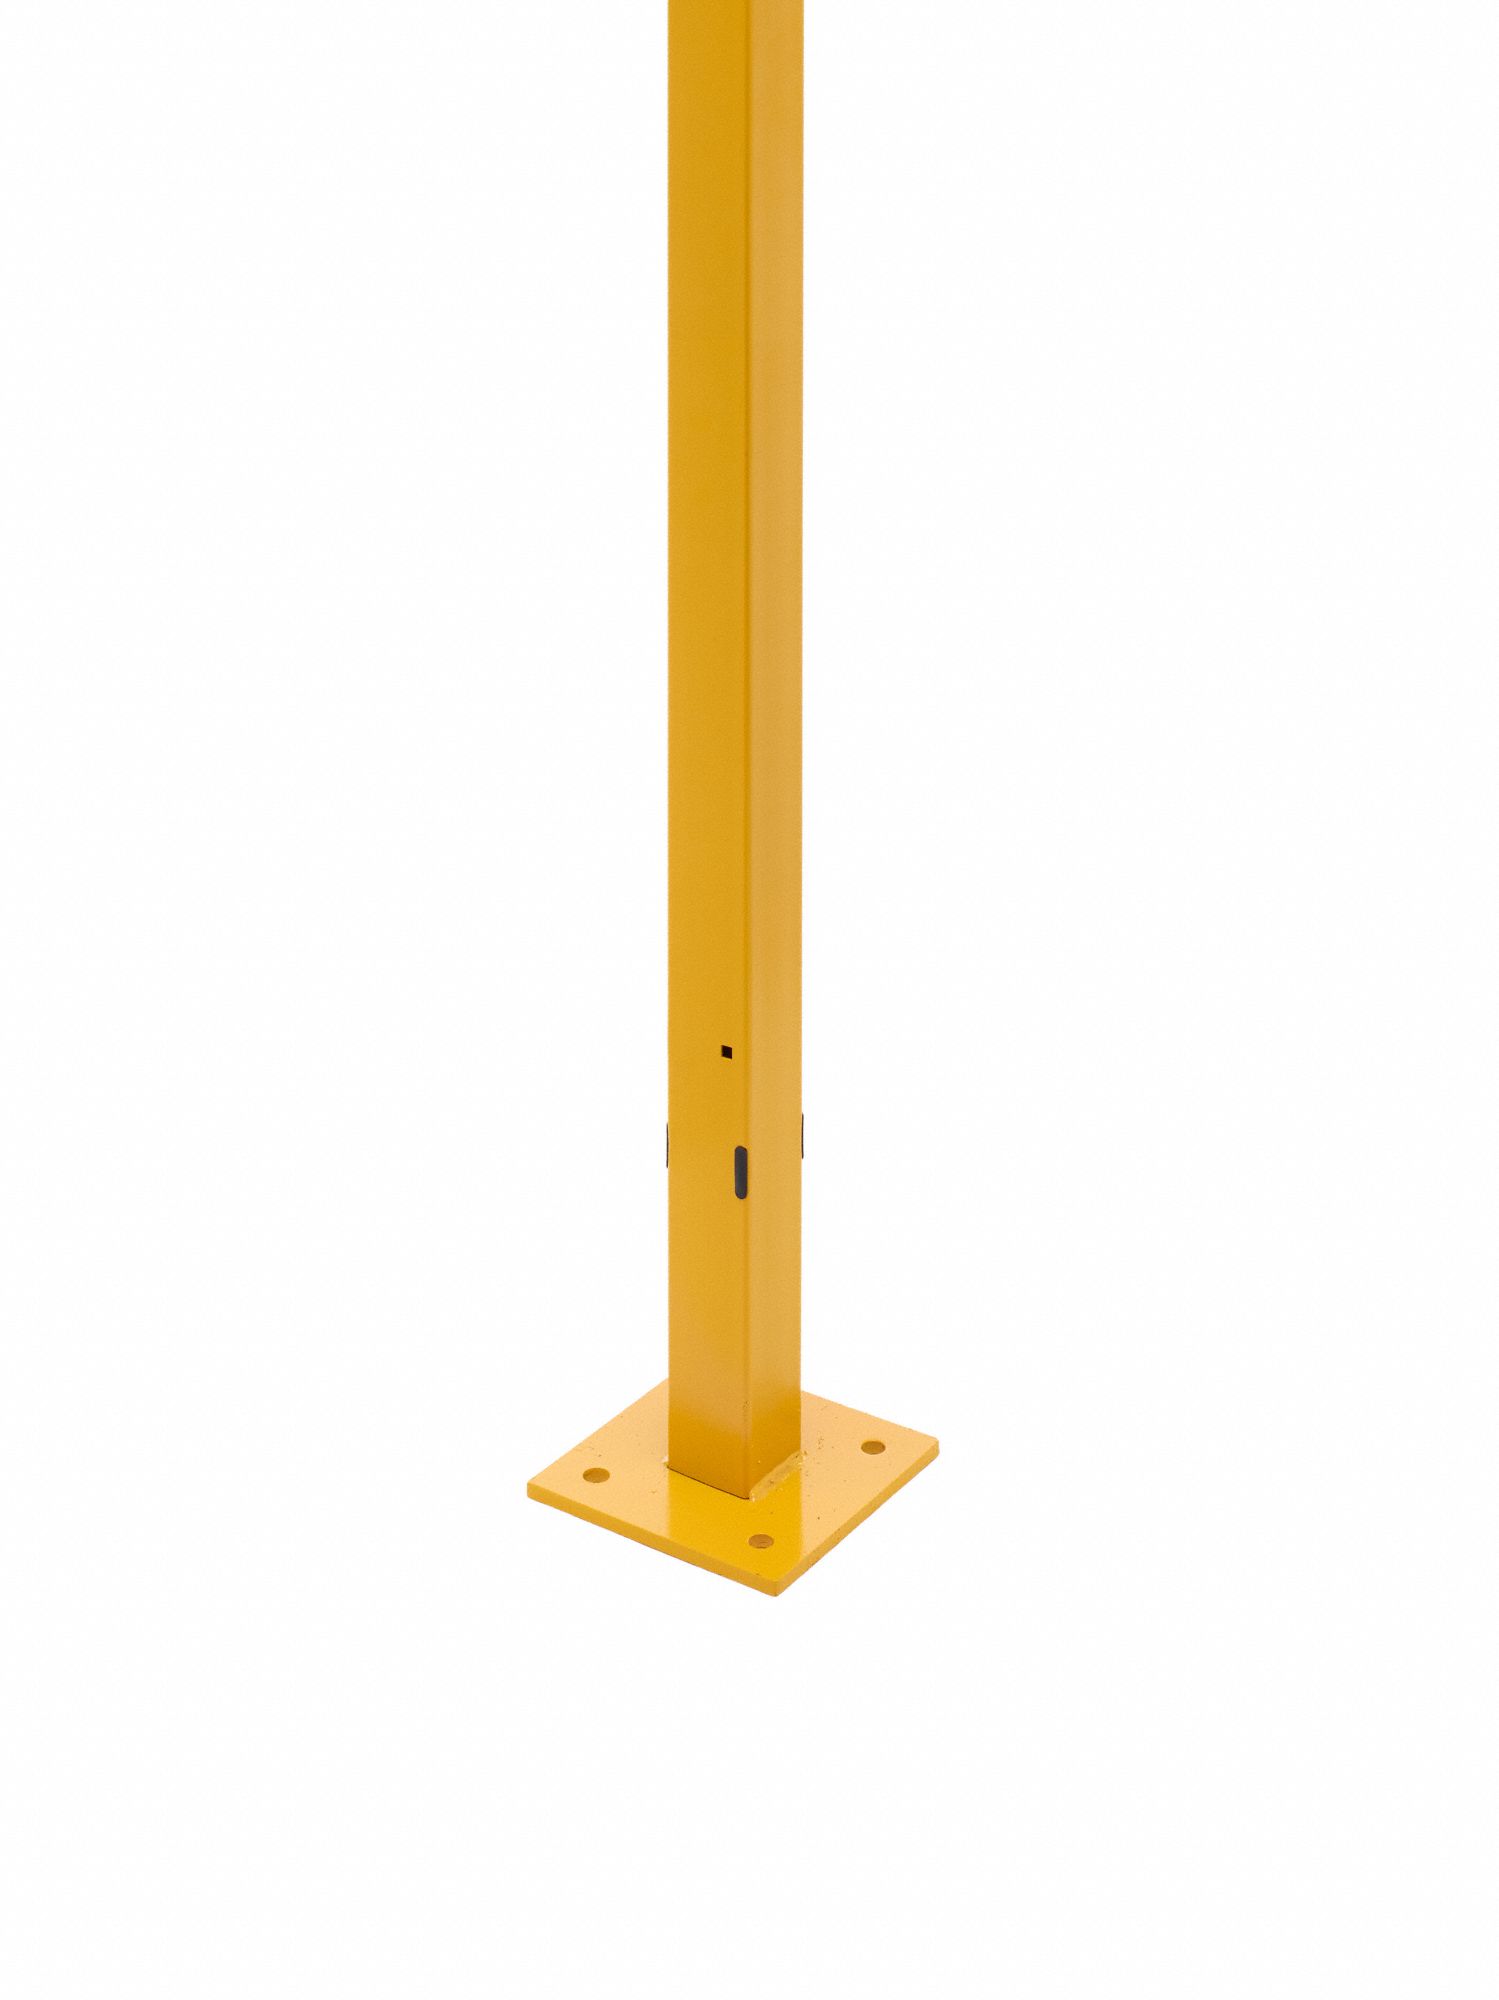 Machine Guard Swing Door Post: 6 ft, 7 1/2 in x 7 1/2 in, Swing Door Post